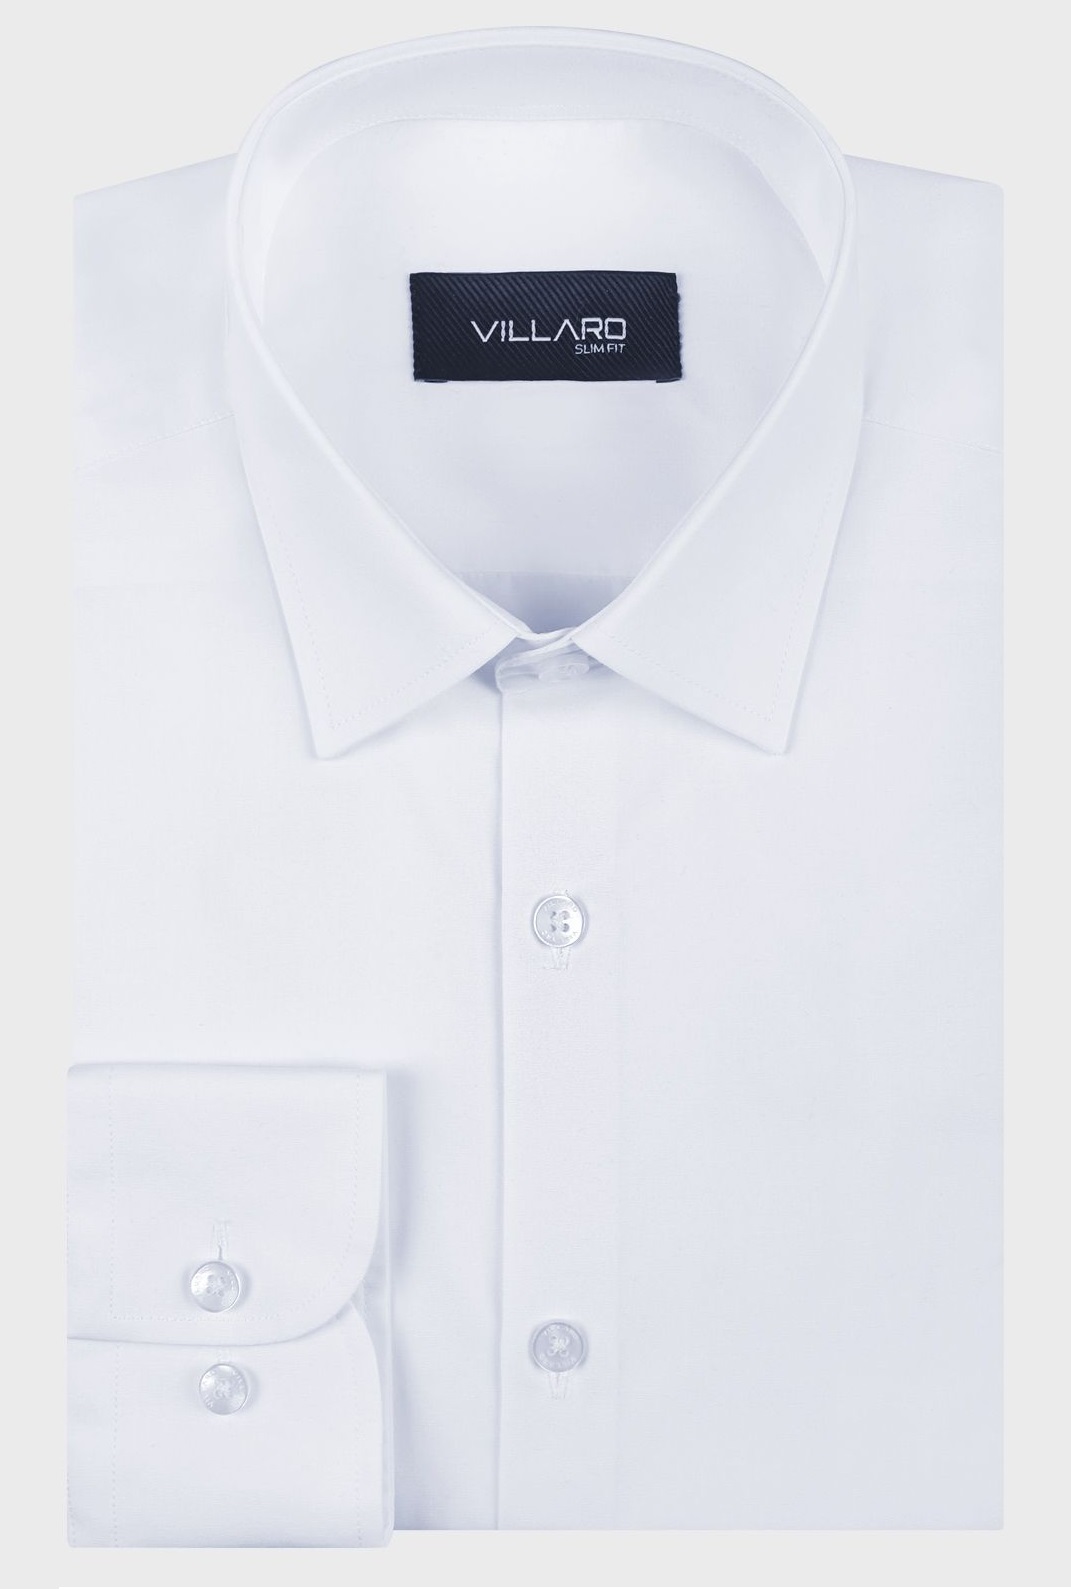 Pánská košile dlouhý rukáv VILLARO by MMER 01LDSB Slim Fit ZKRÁCENÁ Velikost: 36 na výšku cca 164/170